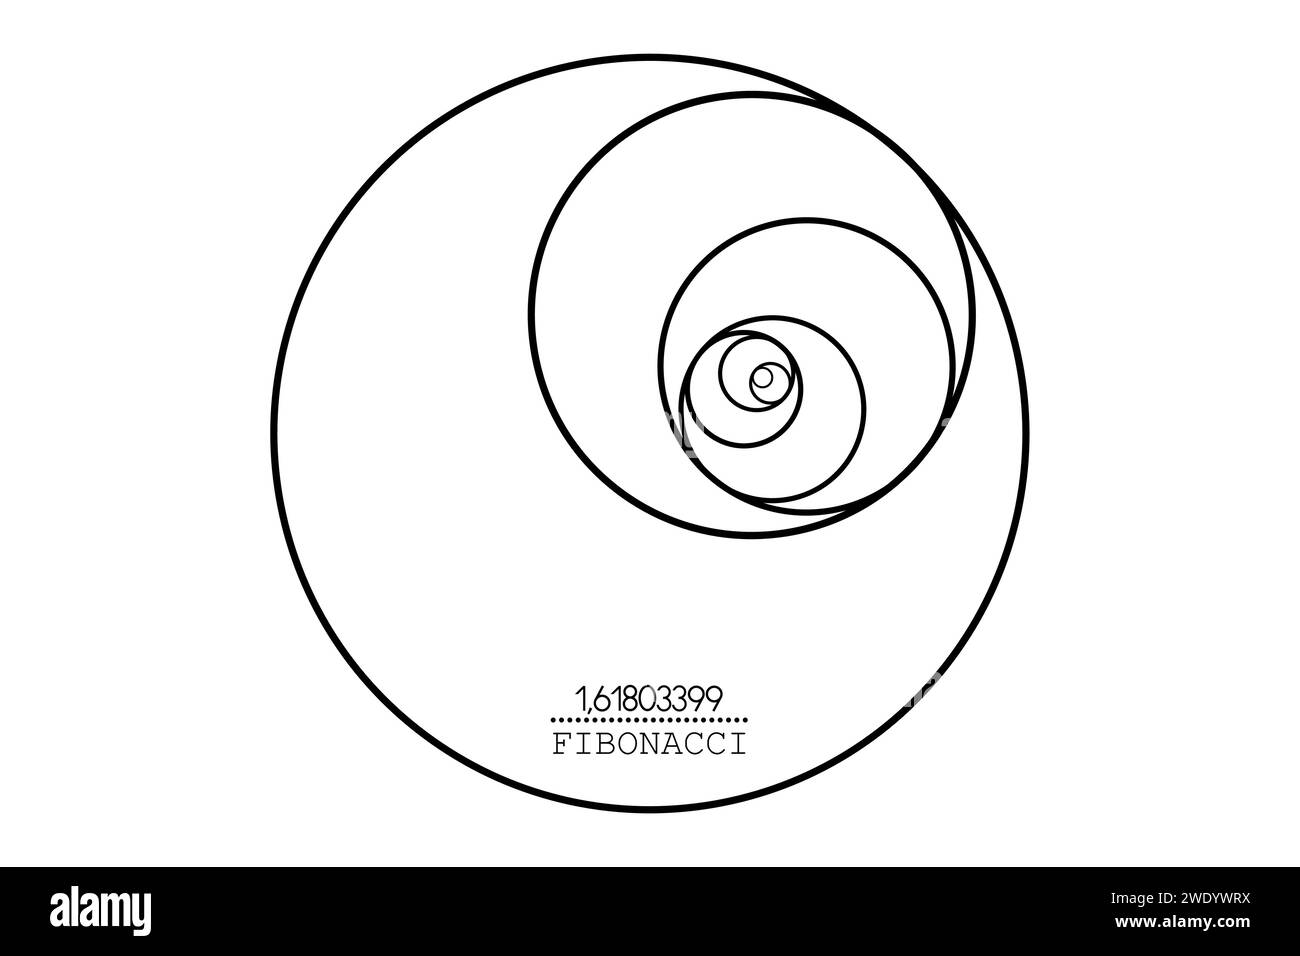 Cerchio di sequenza Fibonacci. Golden ratio. Forme geometriche a spirale. Cerchi in proporzione dorata. Design futuristico minimalista di moda. Logo. Vettore Illustrazione Vettoriale